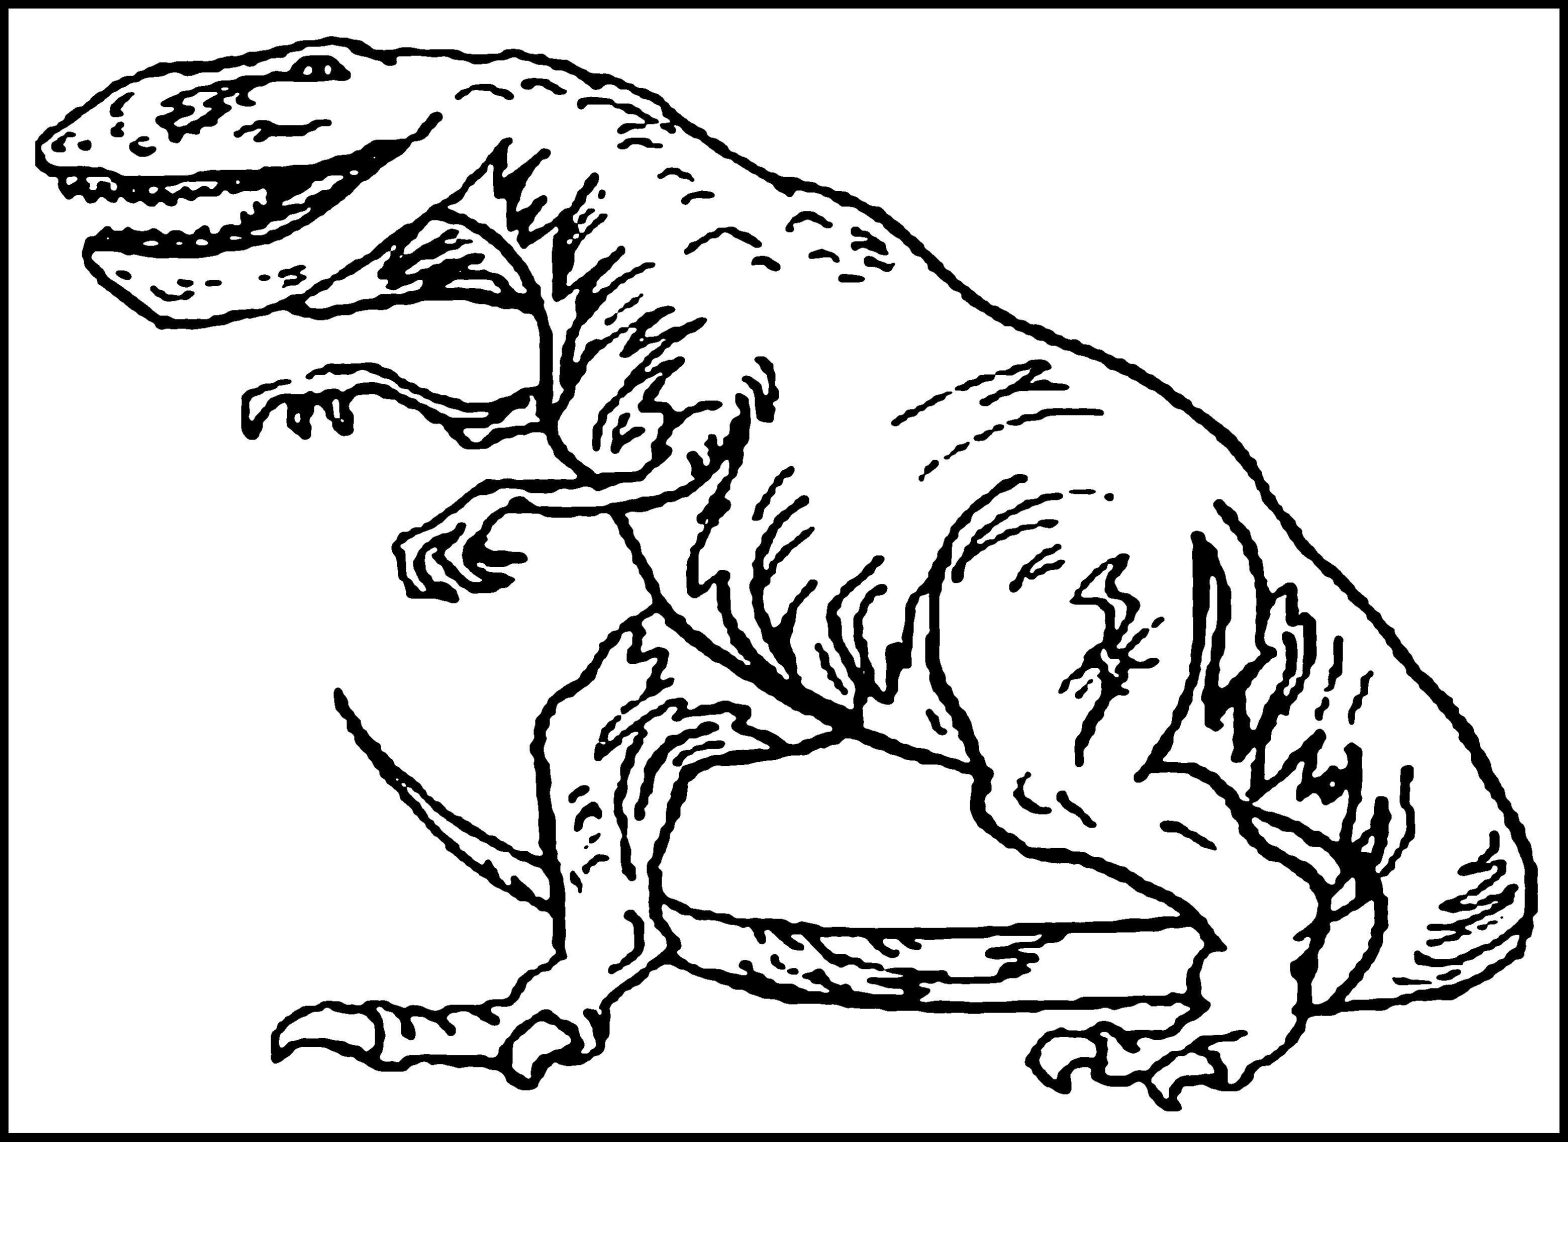 Раскраска динозавра для мальчиков (распечатываемые, контуры, забавные)